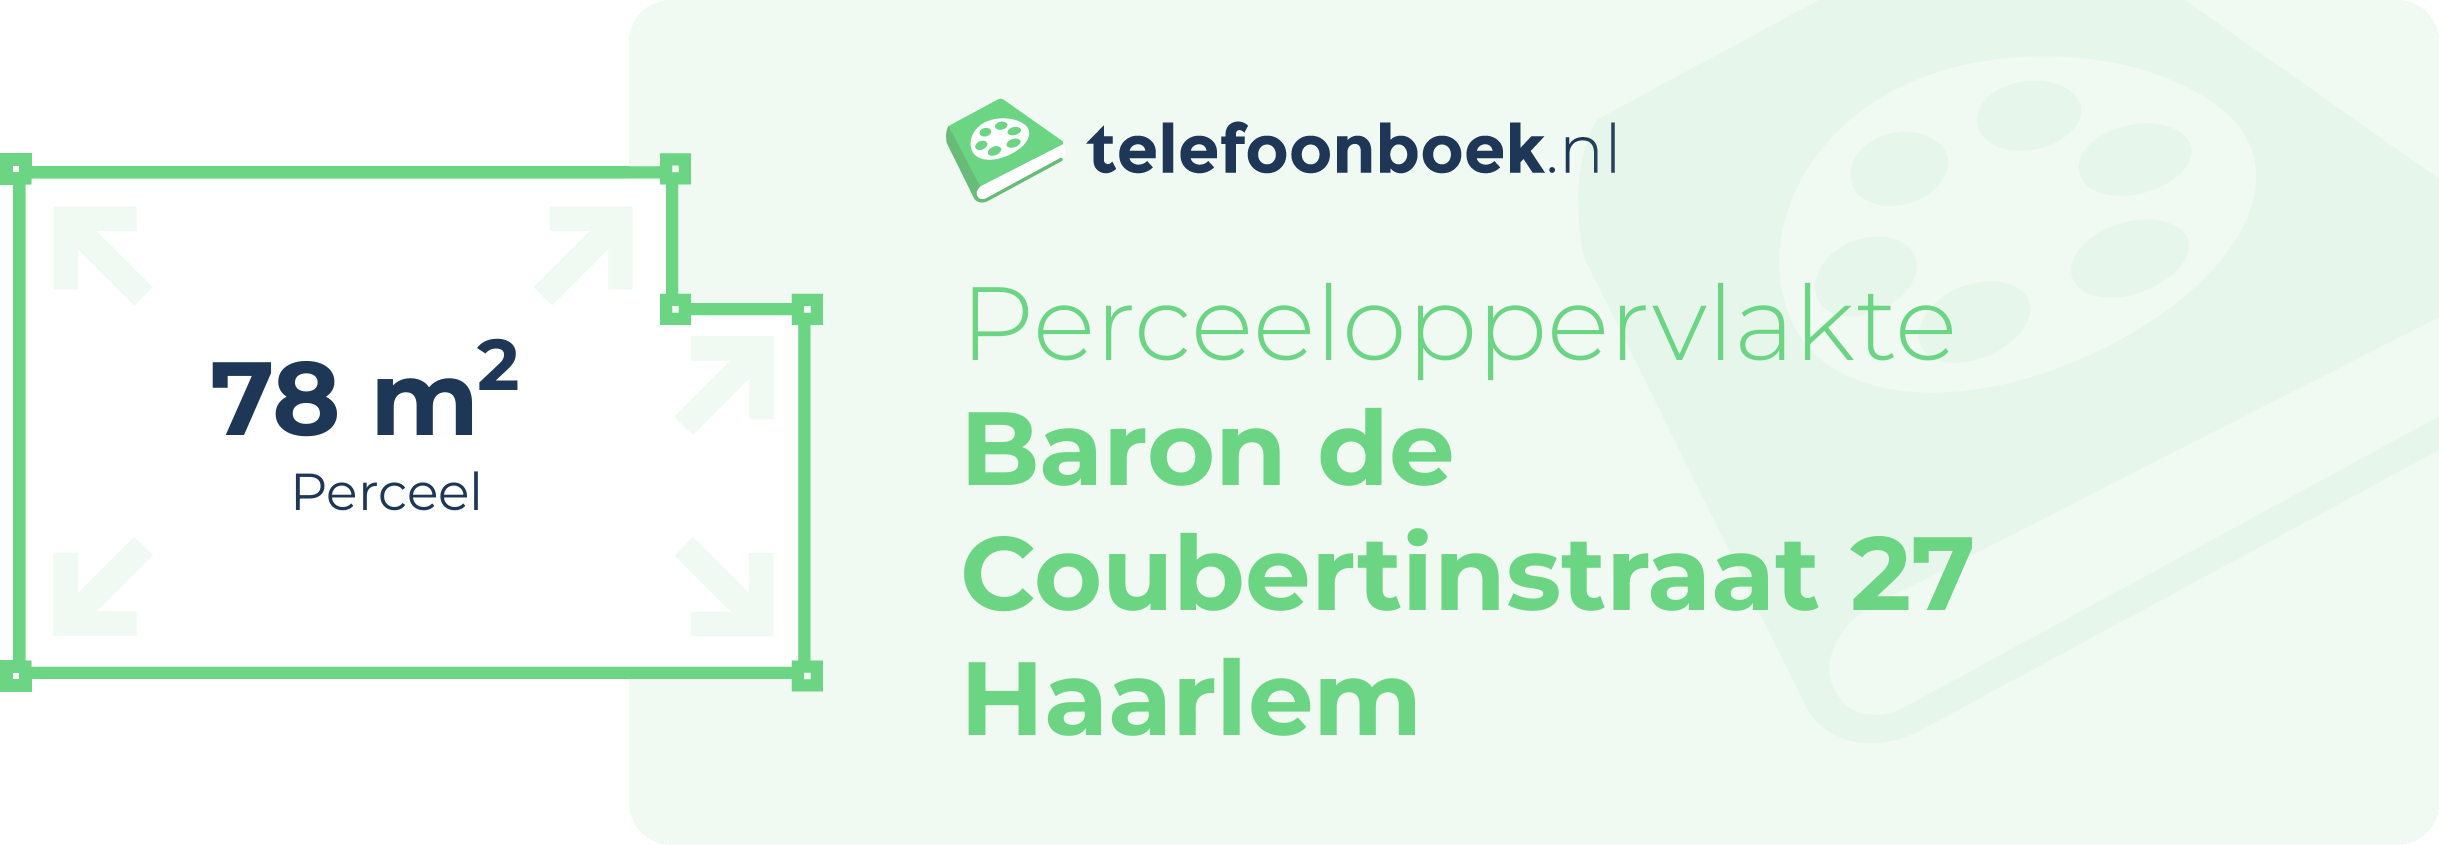 Perceeloppervlakte Baron De Coubertinstraat 27 Haarlem